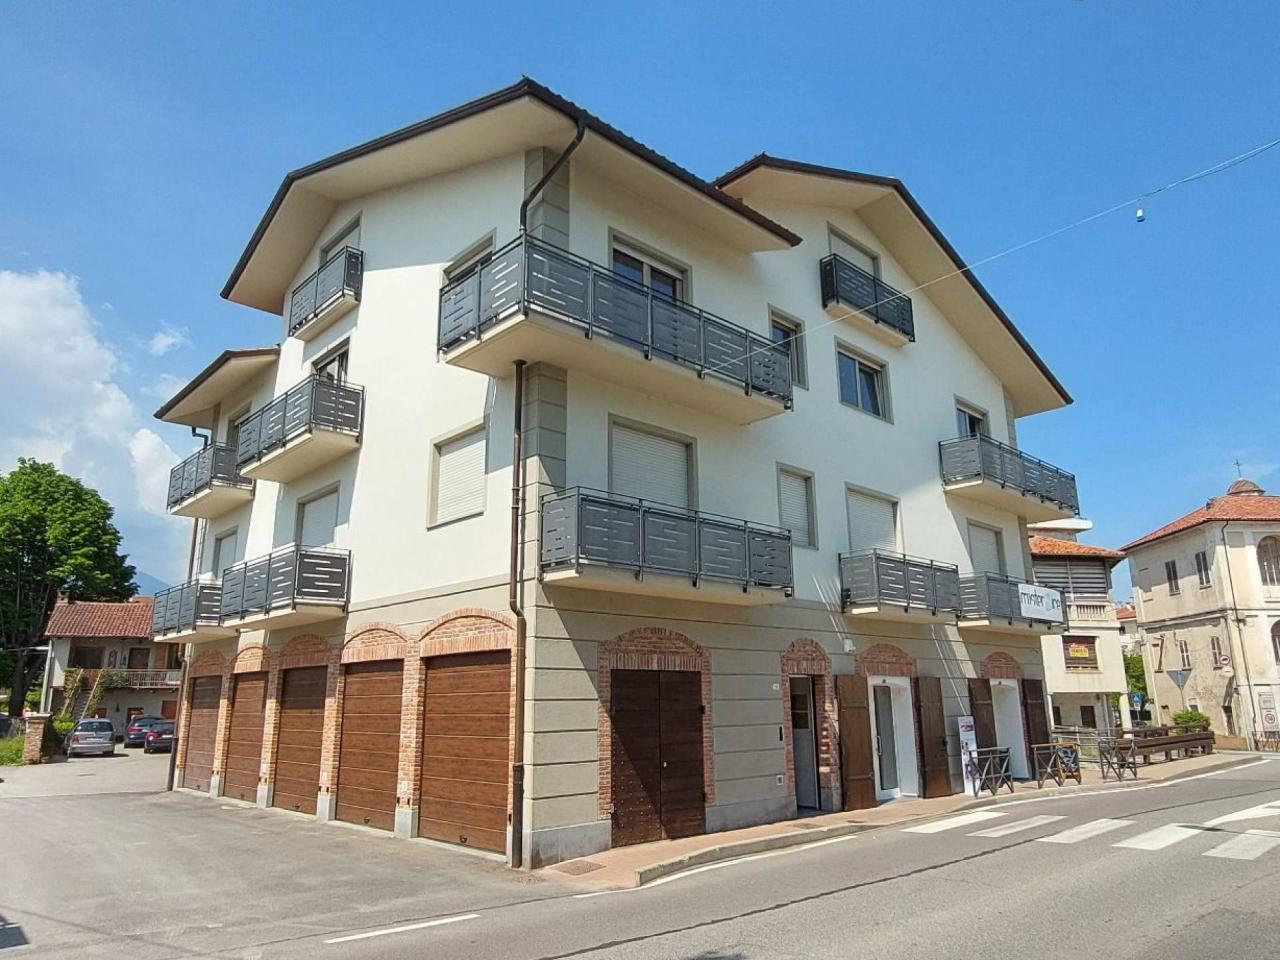 Ufficio condiviso in affitto a Castellamonte